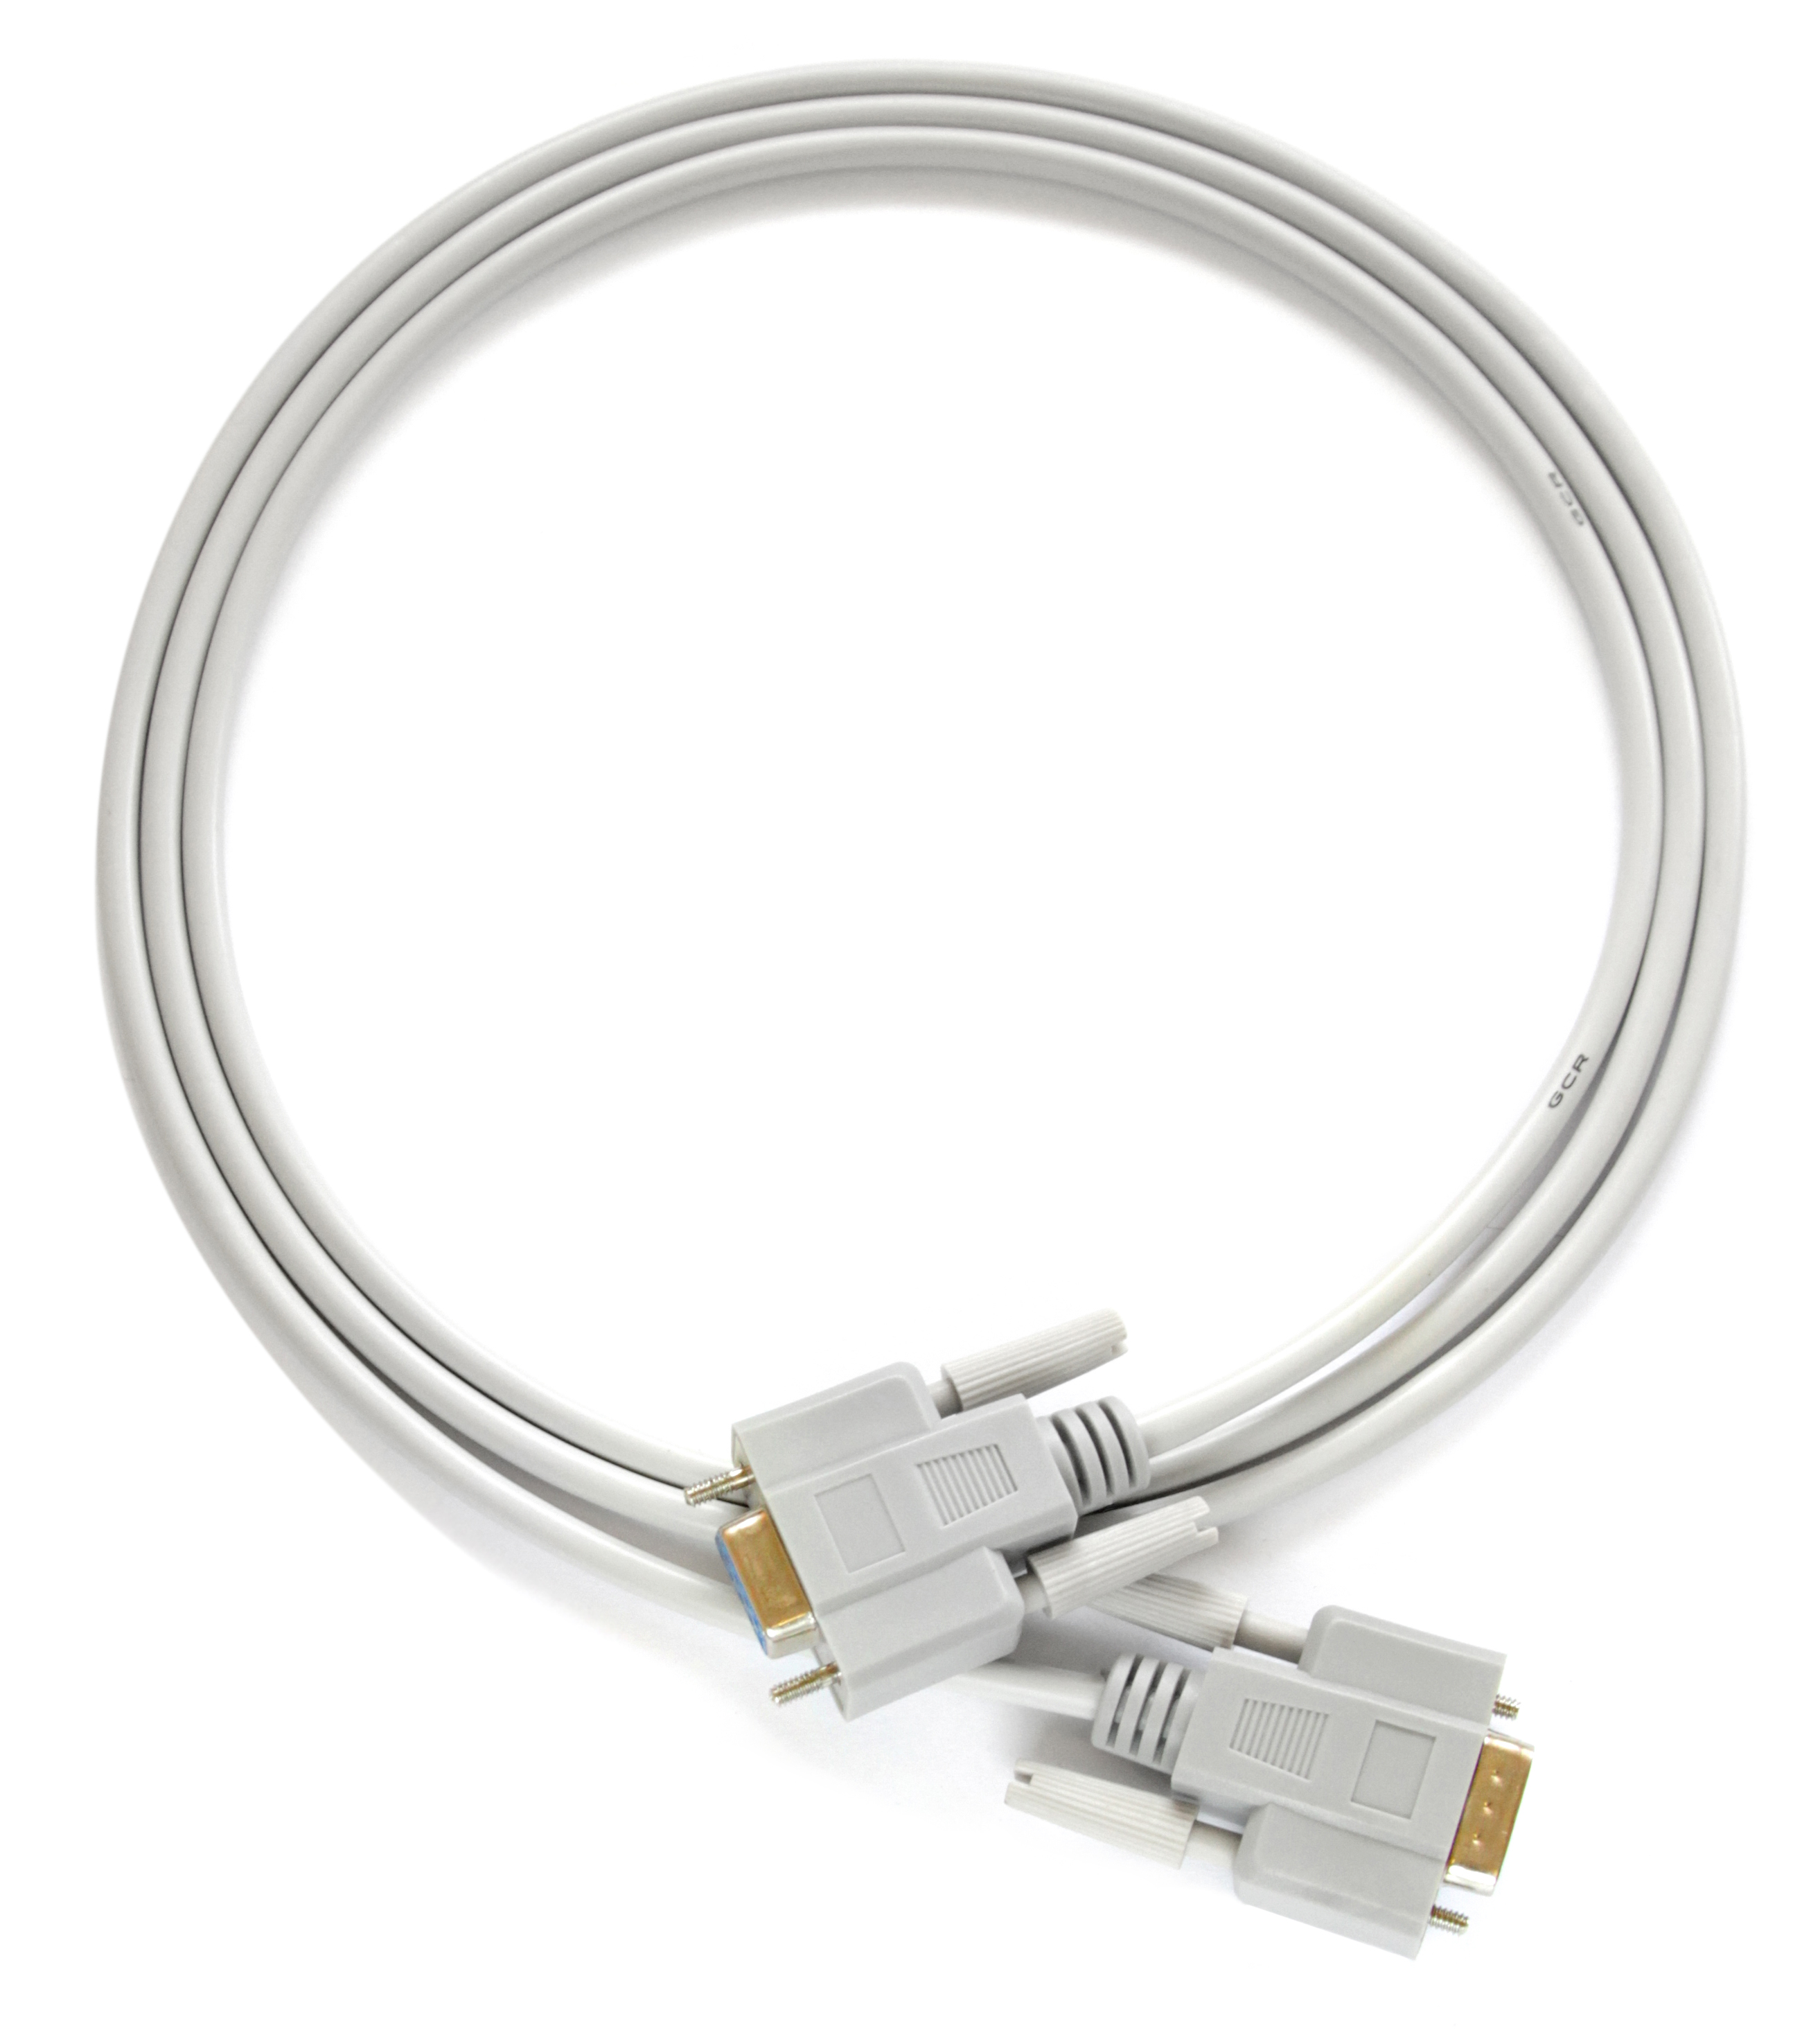 Модемный кабель RS-232 COM DB9F/DB9F для прошивки ресиверов